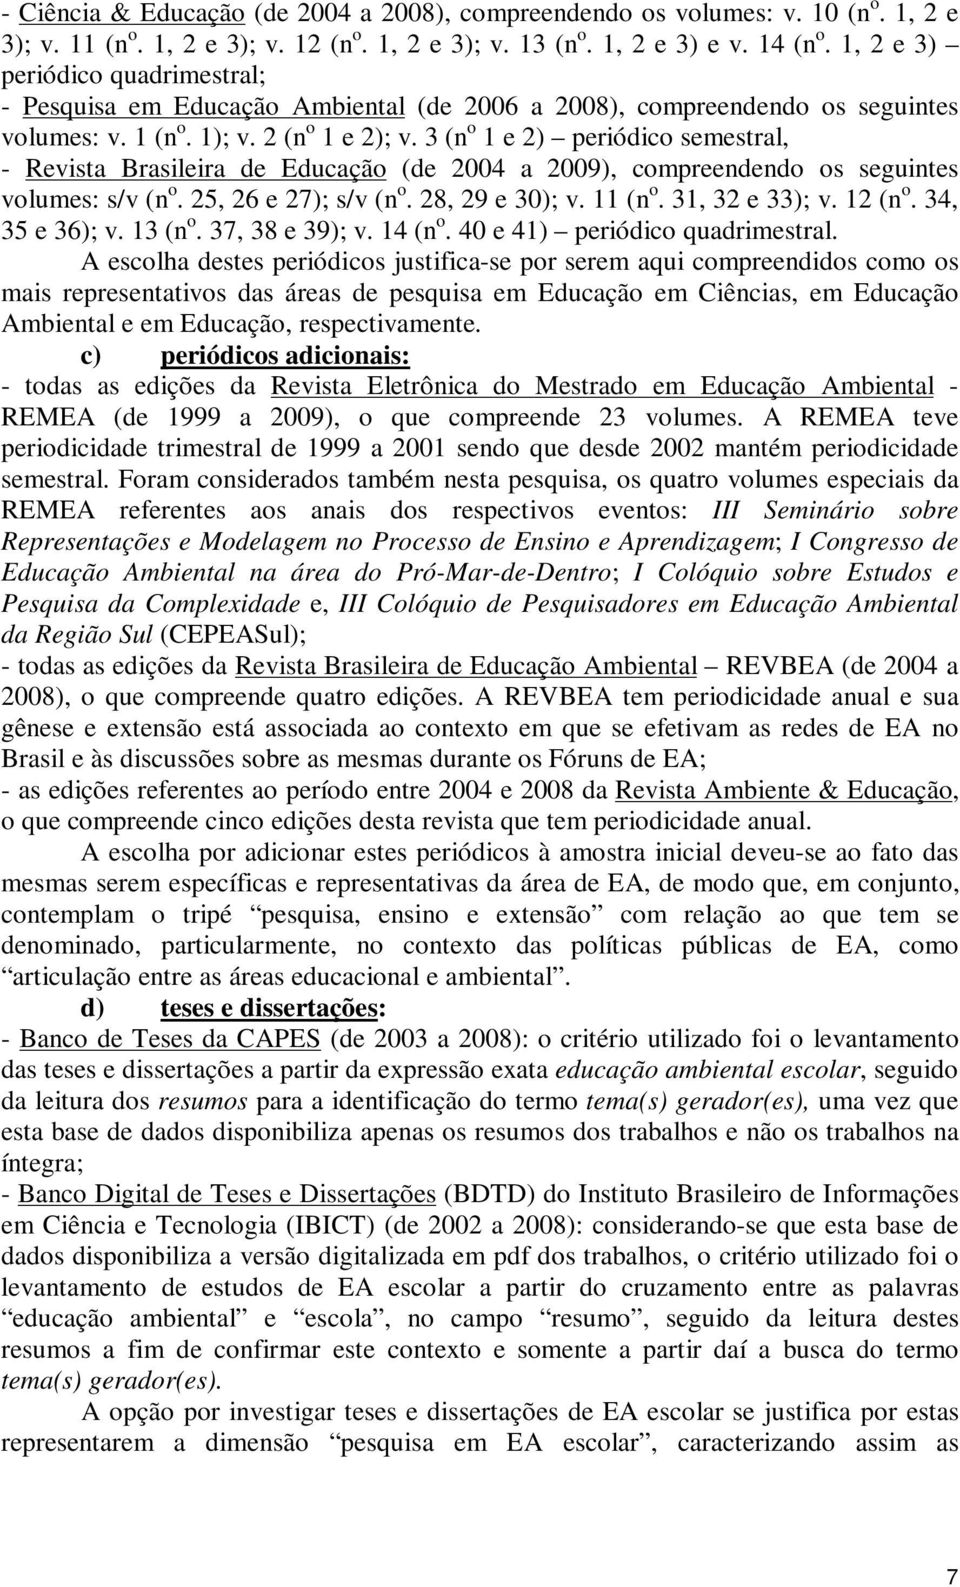 3 (n o 1 e 2) periódico semestral, - Revista Brasileira de Educação (de 2004 a 2009), compreendendo os seguintes volumes: s/v (n o. 25, 26 e 27); s/v (n o. 28, 29 e 30); v. 11 (n o. 31, 32 e 33); v.